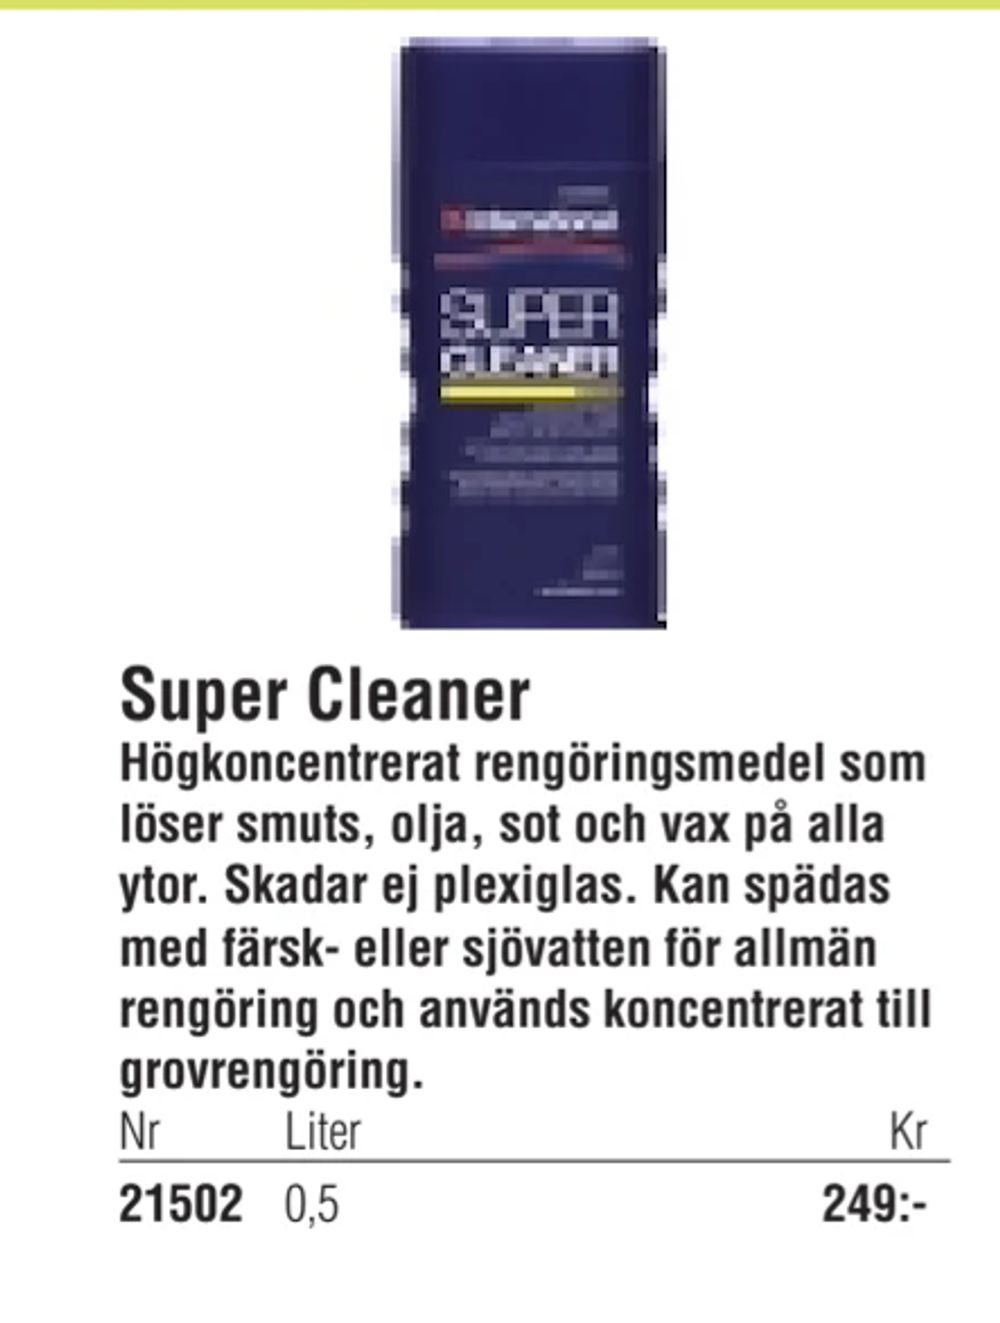 Erbjudanden på Super Cleaner från Erlandsons Brygga för 249 kr